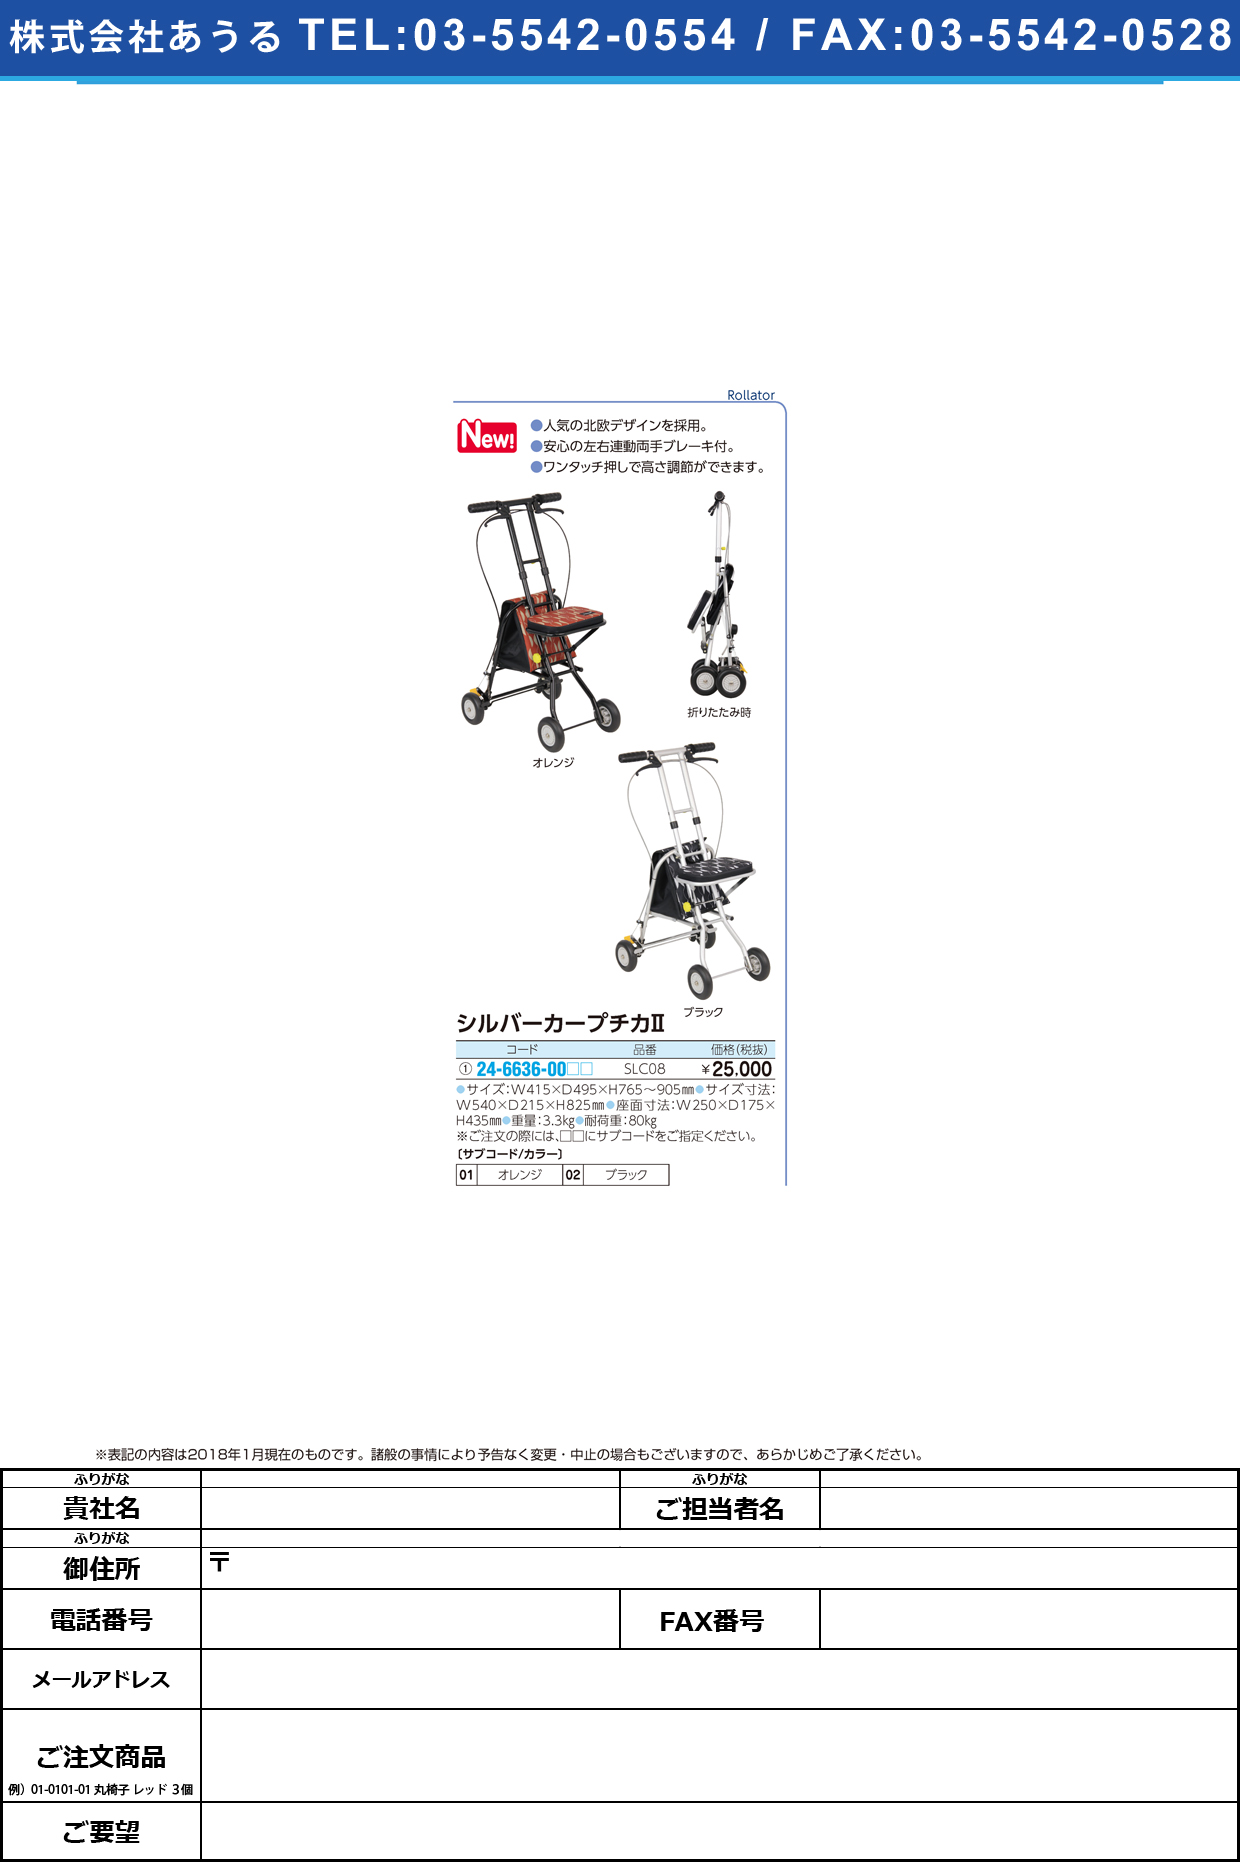 (24-6636-00)シルバーカープチカⅡ SLC08 ｼﾙﾊﾞｰｶｰﾌﾟﾁｶ2 ブラック【1台単位】【2019年カタログ商品】